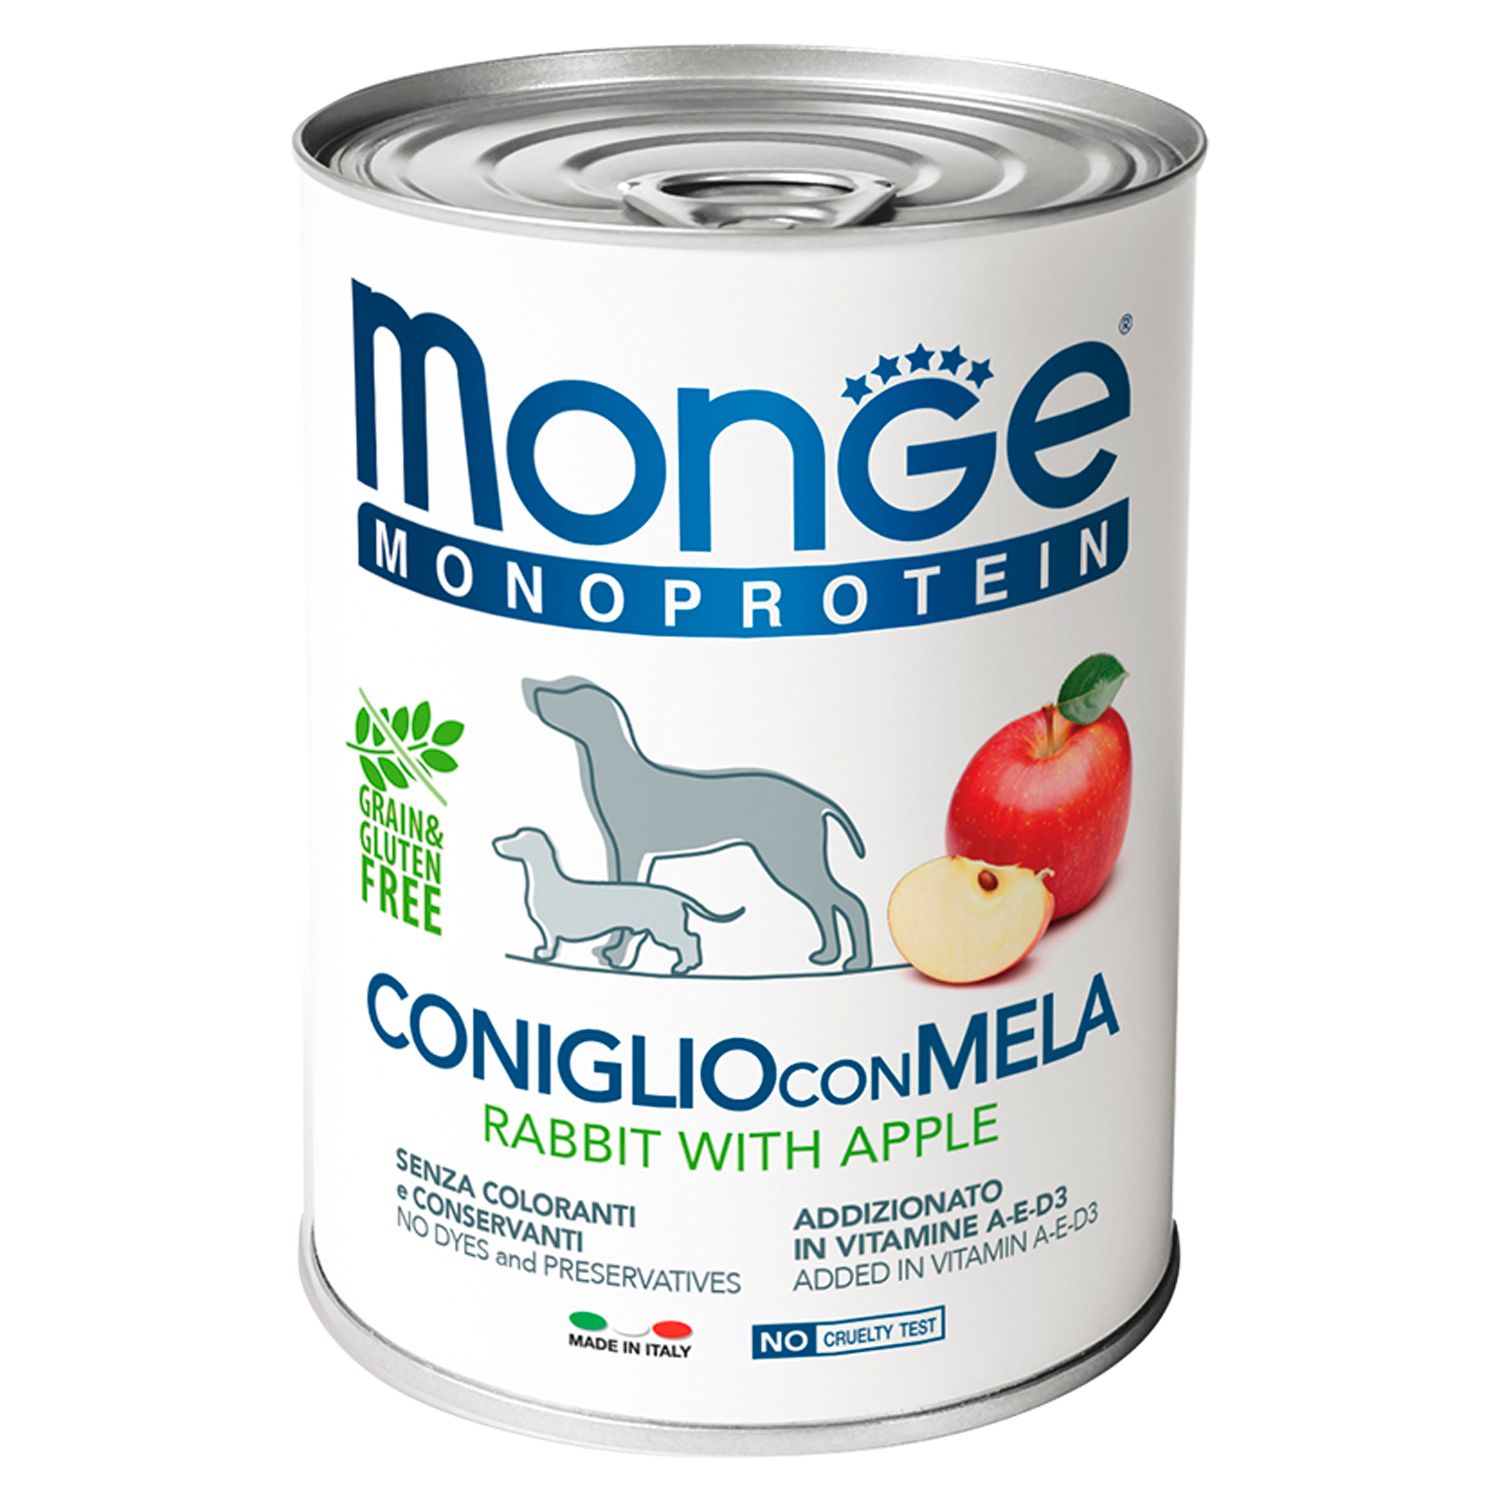 Monge Monoprotein Fruit Кролик/яблоко консервы для собак 2